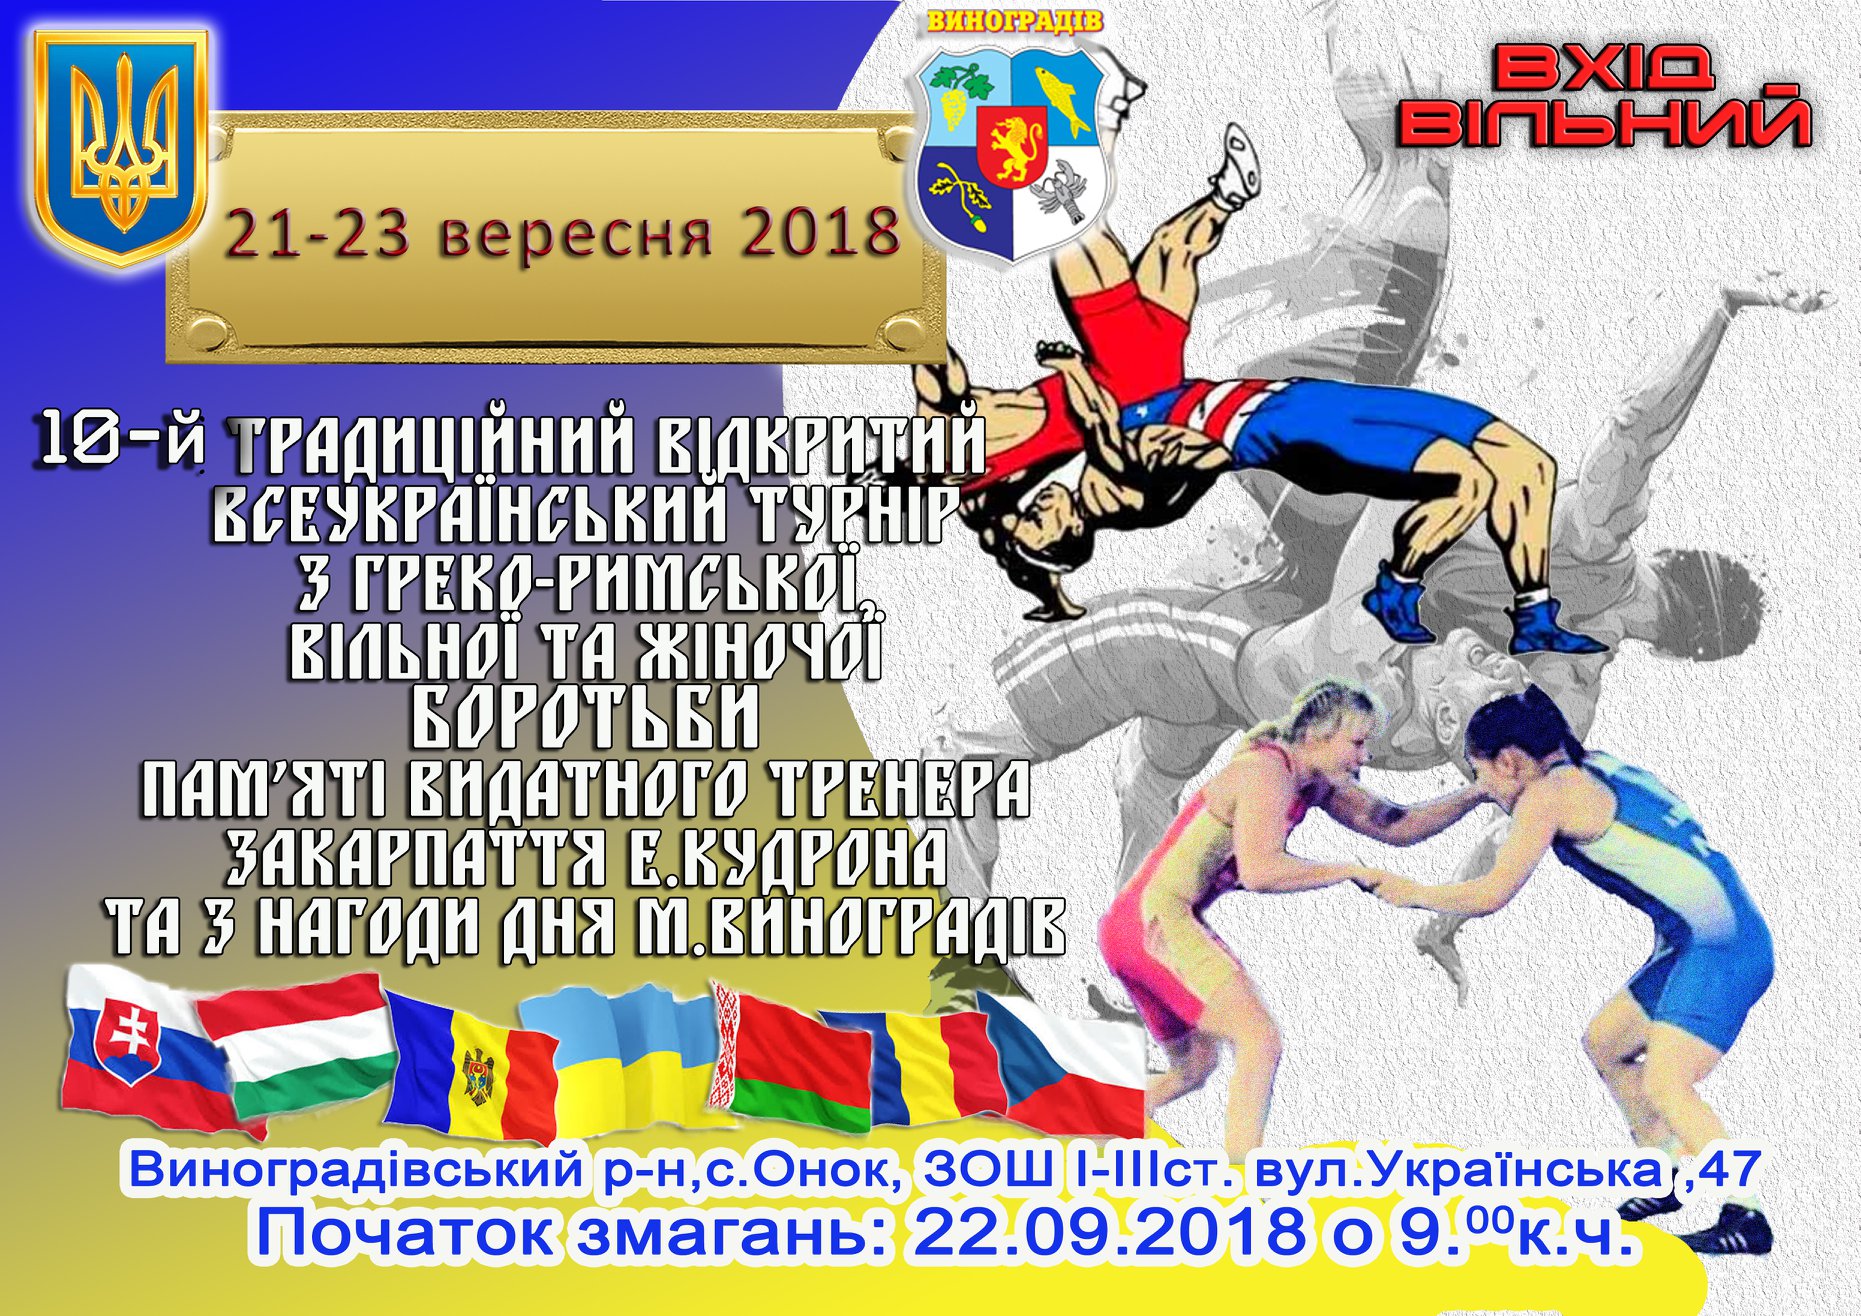 У Виноградові пройде X традиційний Відкритий Всеукраїнський турнір з греко-римської, вільної та жіночої боротьби